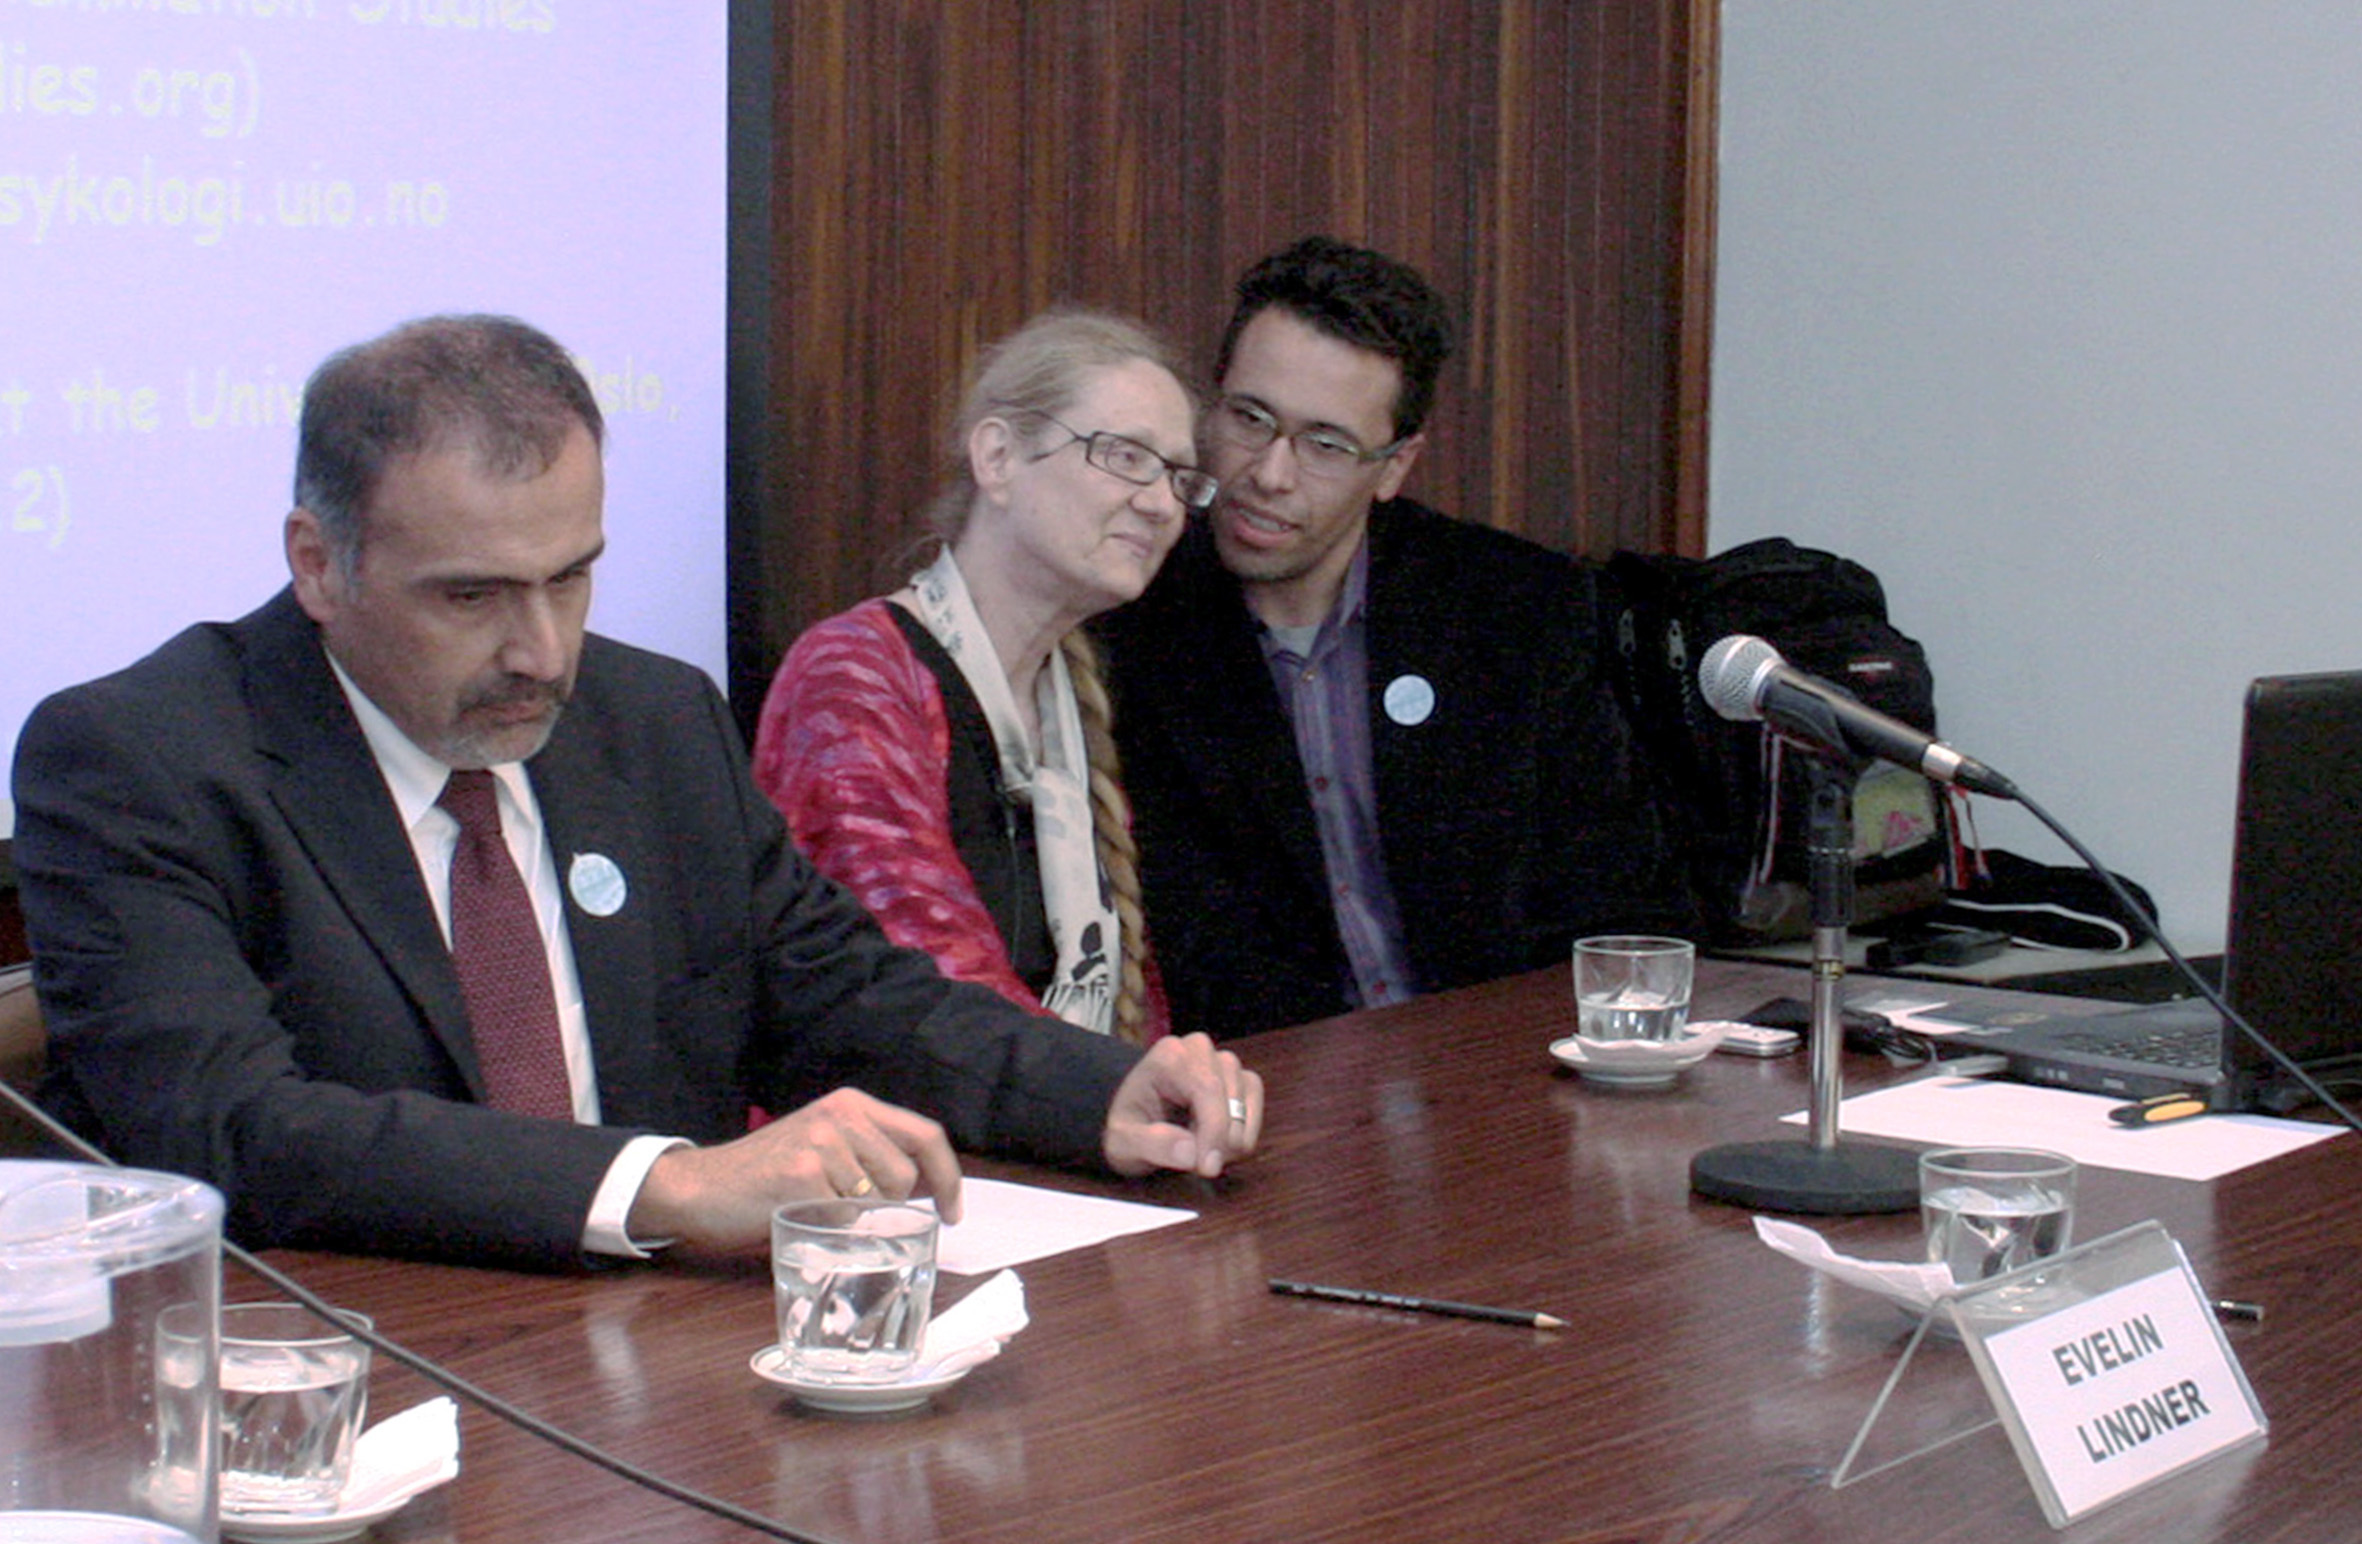 Guilherme Assis de Almeida, Evelin Lindner e tradutor na mesa de abertura do evento